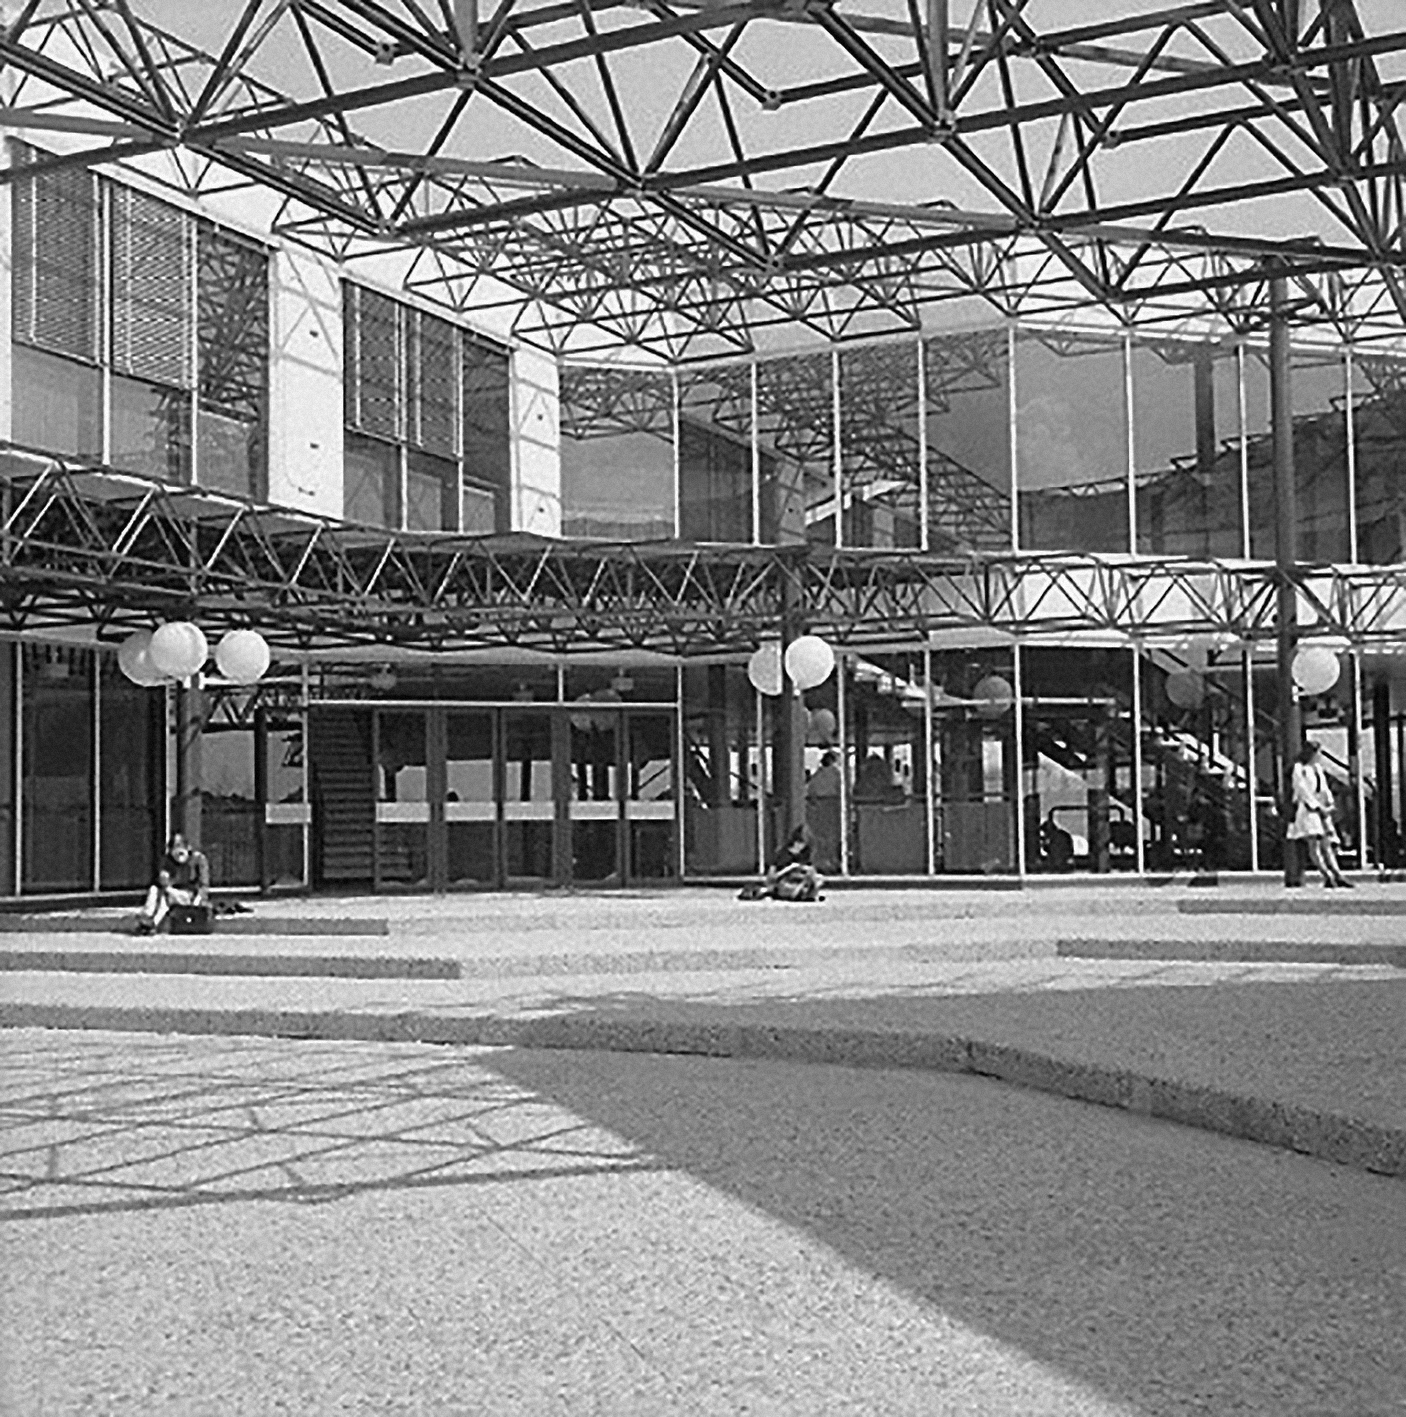 Université de Bron-Parilly, Lyon, 1972 (R. Dottelonde, arch., Pétroff, ing.).